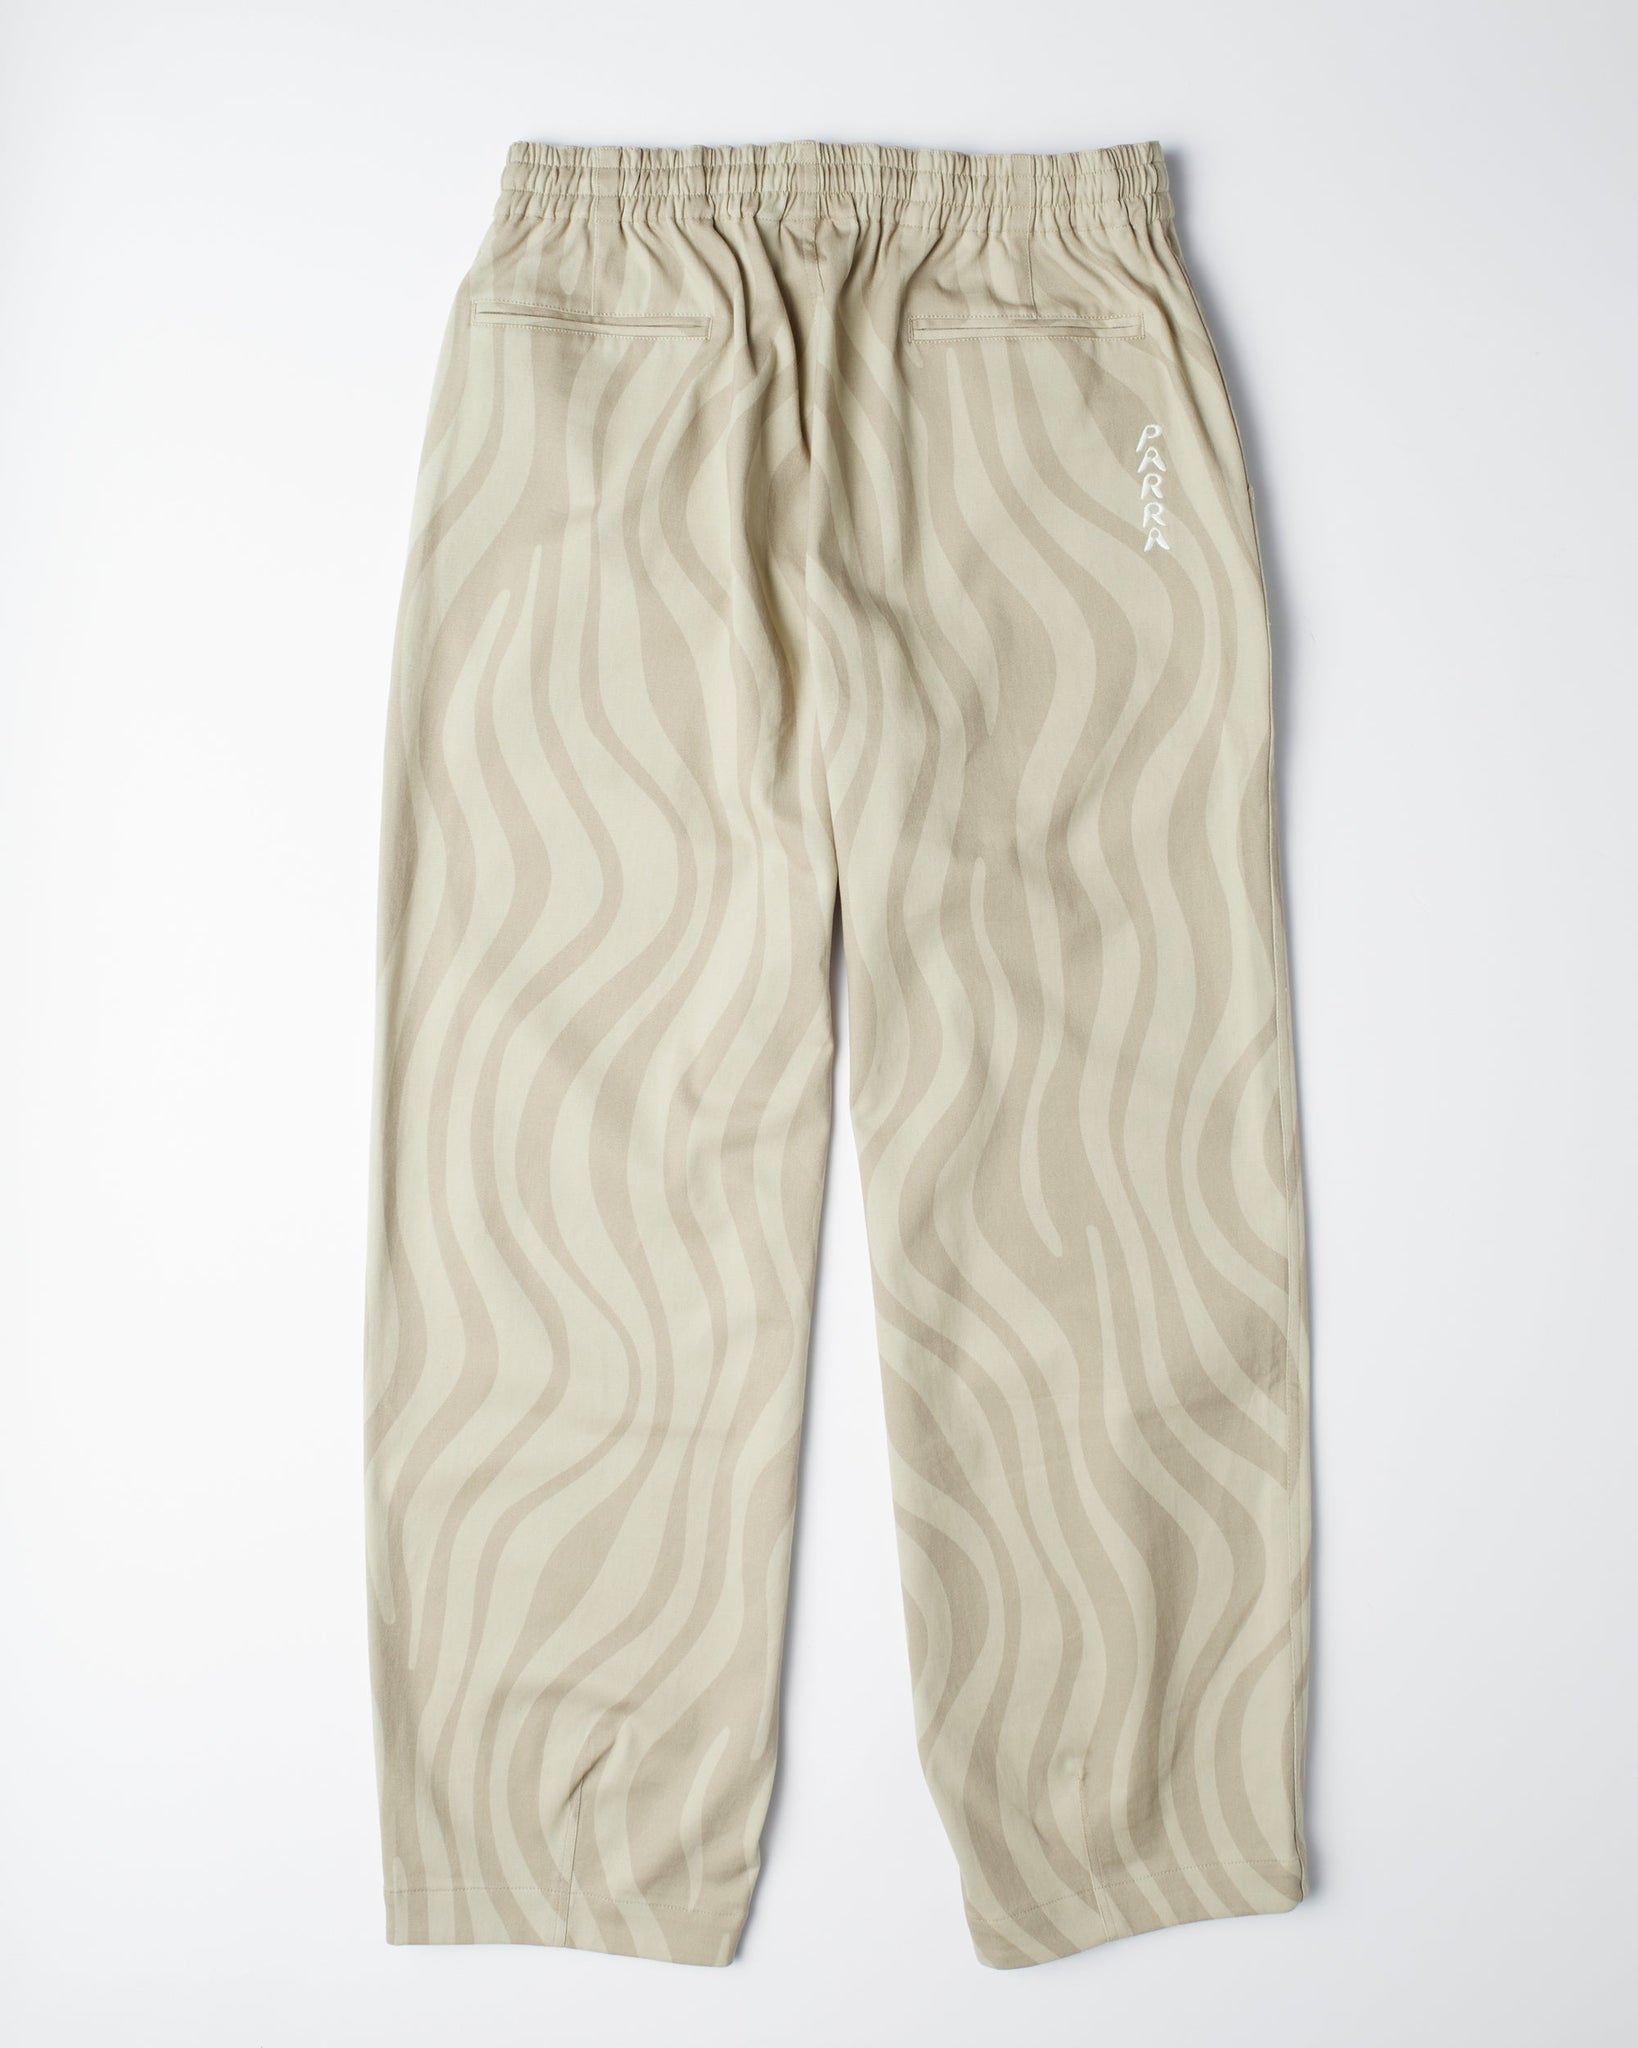 flowing stripes pants - tan